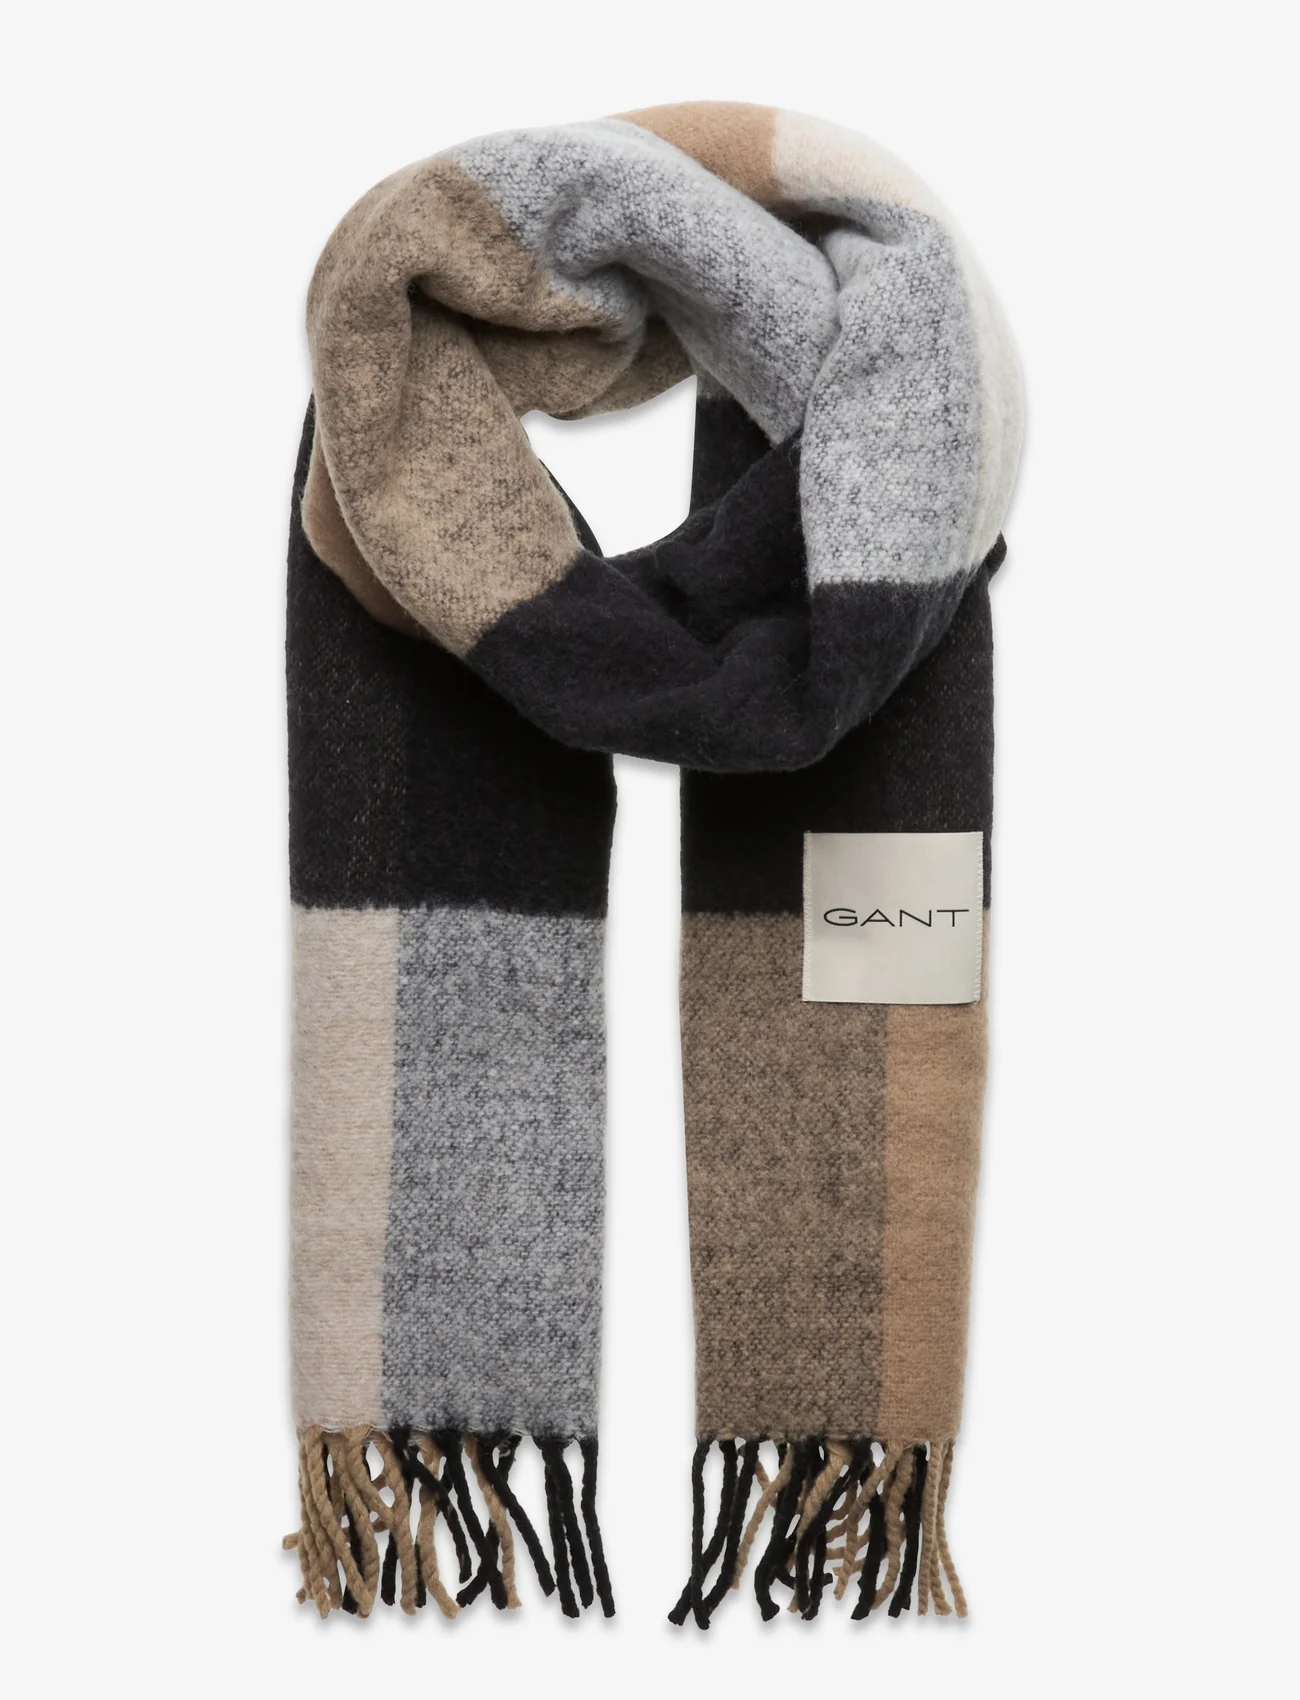 GANT - CHECKED SCARF - winter scarves - dark khaki - 0